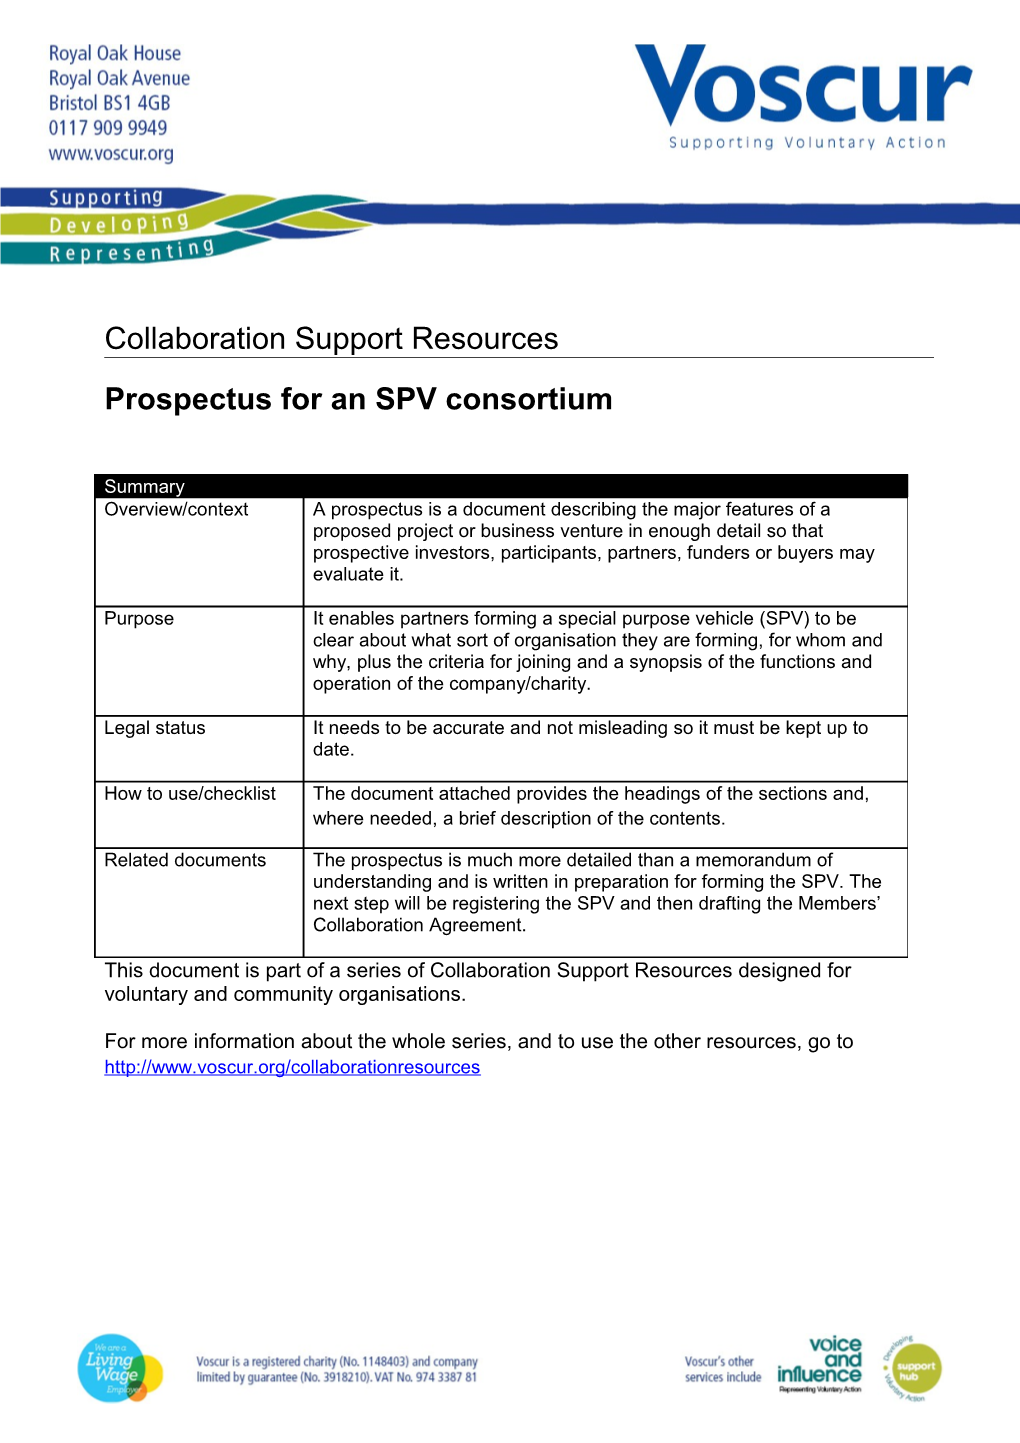 Prospectus for an SPV Consortium